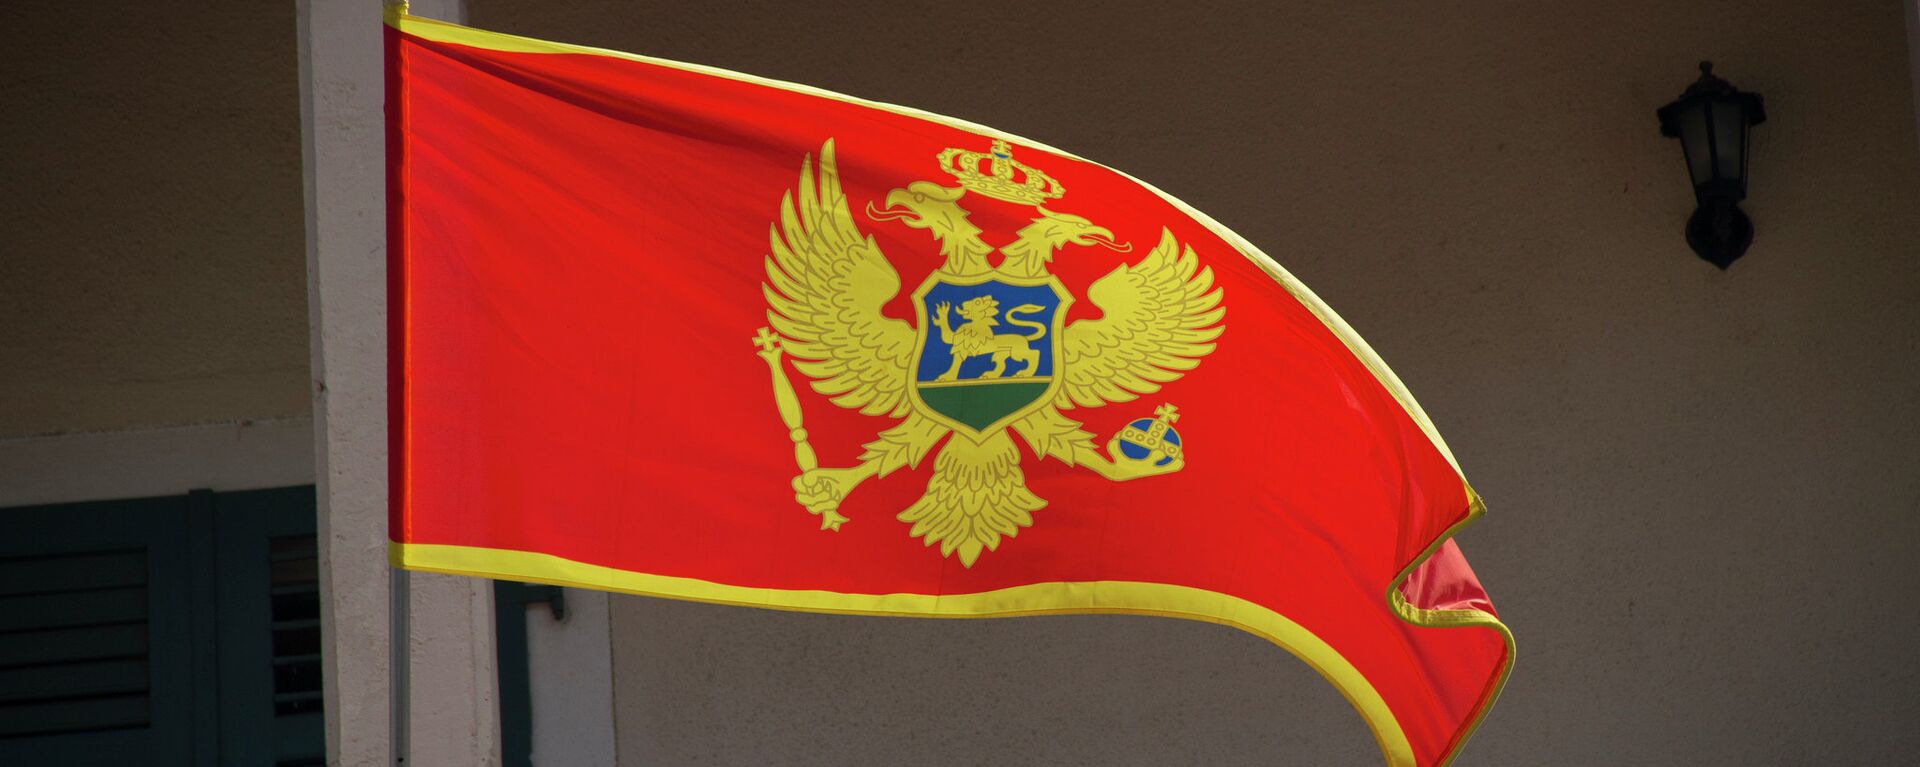 Crnogorska zastava - Sputnik Srbija, 1920, 29.11.2021